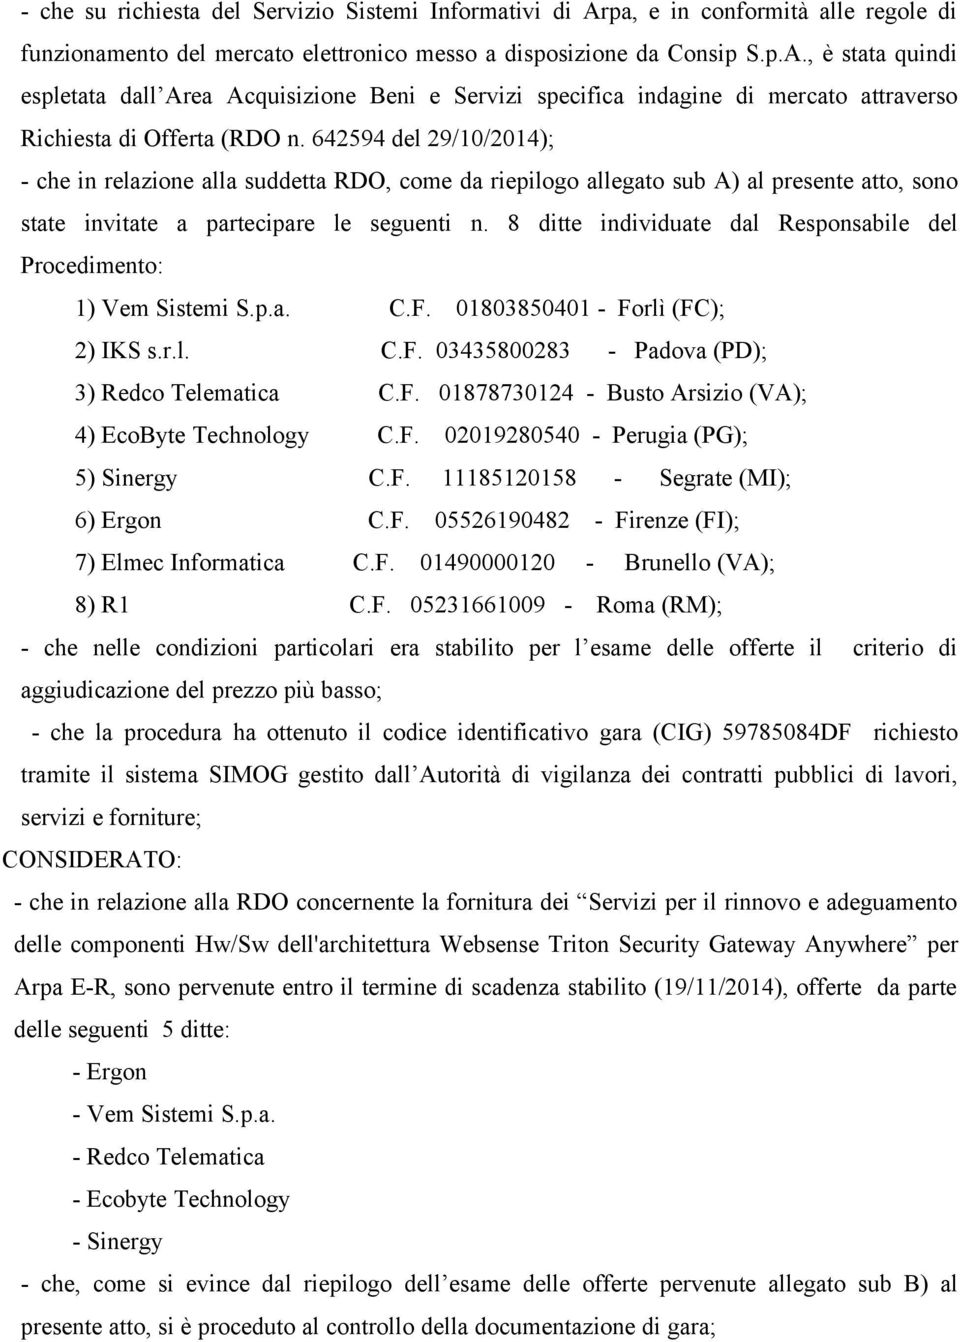 8 ditte individuate dal Responsabile del Procedimento: 1) Vem Sistemi S.p.a. C.F. 01803850401 - Forlì (FC); 2) IKS s.r.l. C.F. 03435800283 - Padova (PD); 3) Redco Telematica C.F. 01878730124 - Busto Arsizio (VA); 4) EcoByte Technology C.